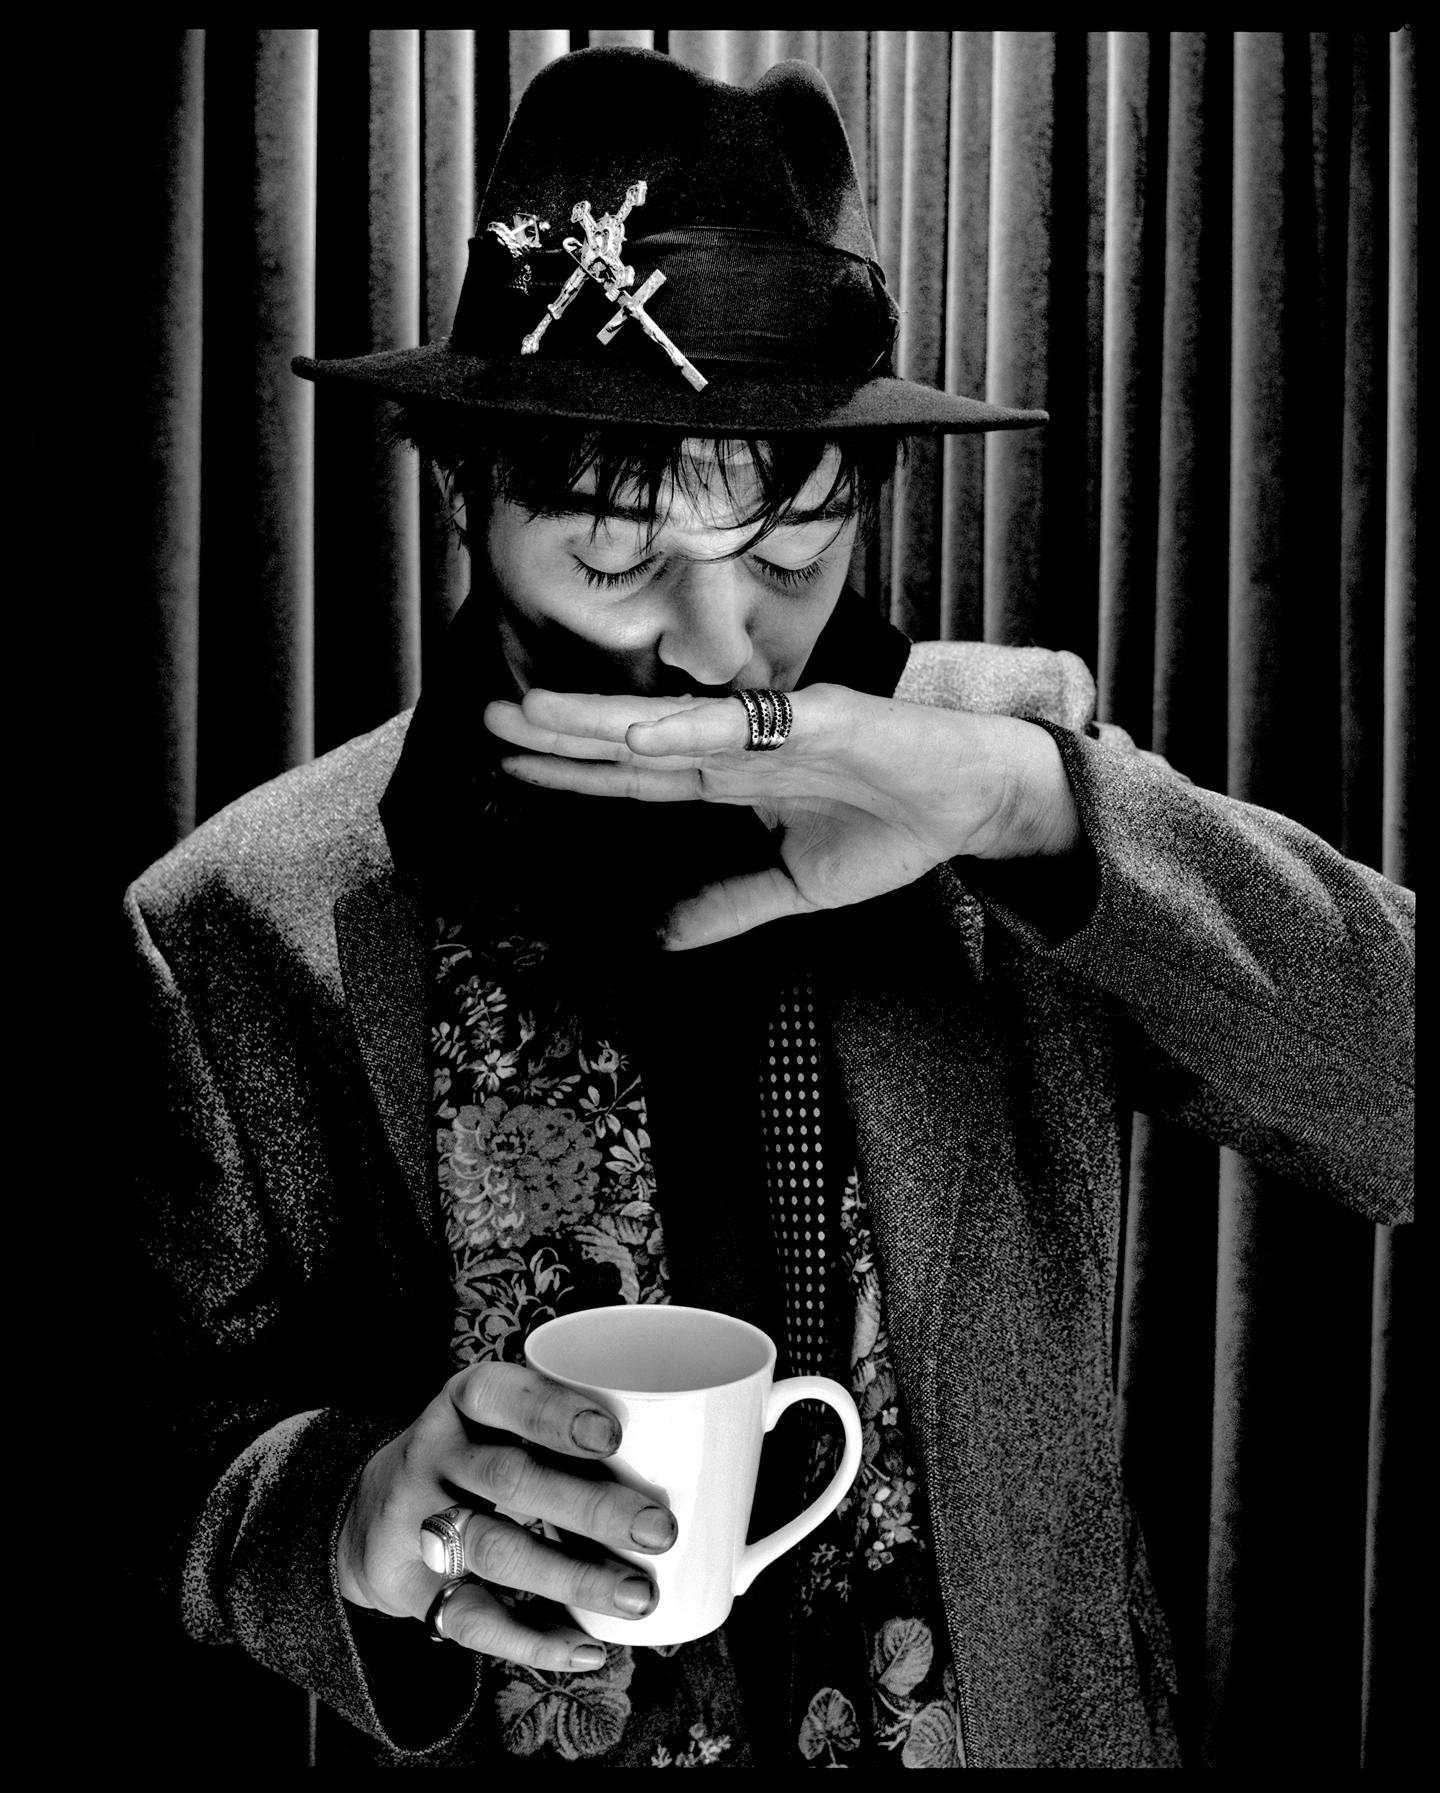 Pete Doherty 

2009

von Kevin Westenberg
Signierte limitierte Auflage

Kevin Westenberg ist seit über 25 Jahren für seine provokanten und elektrisierenden Bilder von Weltklasse-Musikern, Künstlern und Filmstars berühmt.

Seine Technik der